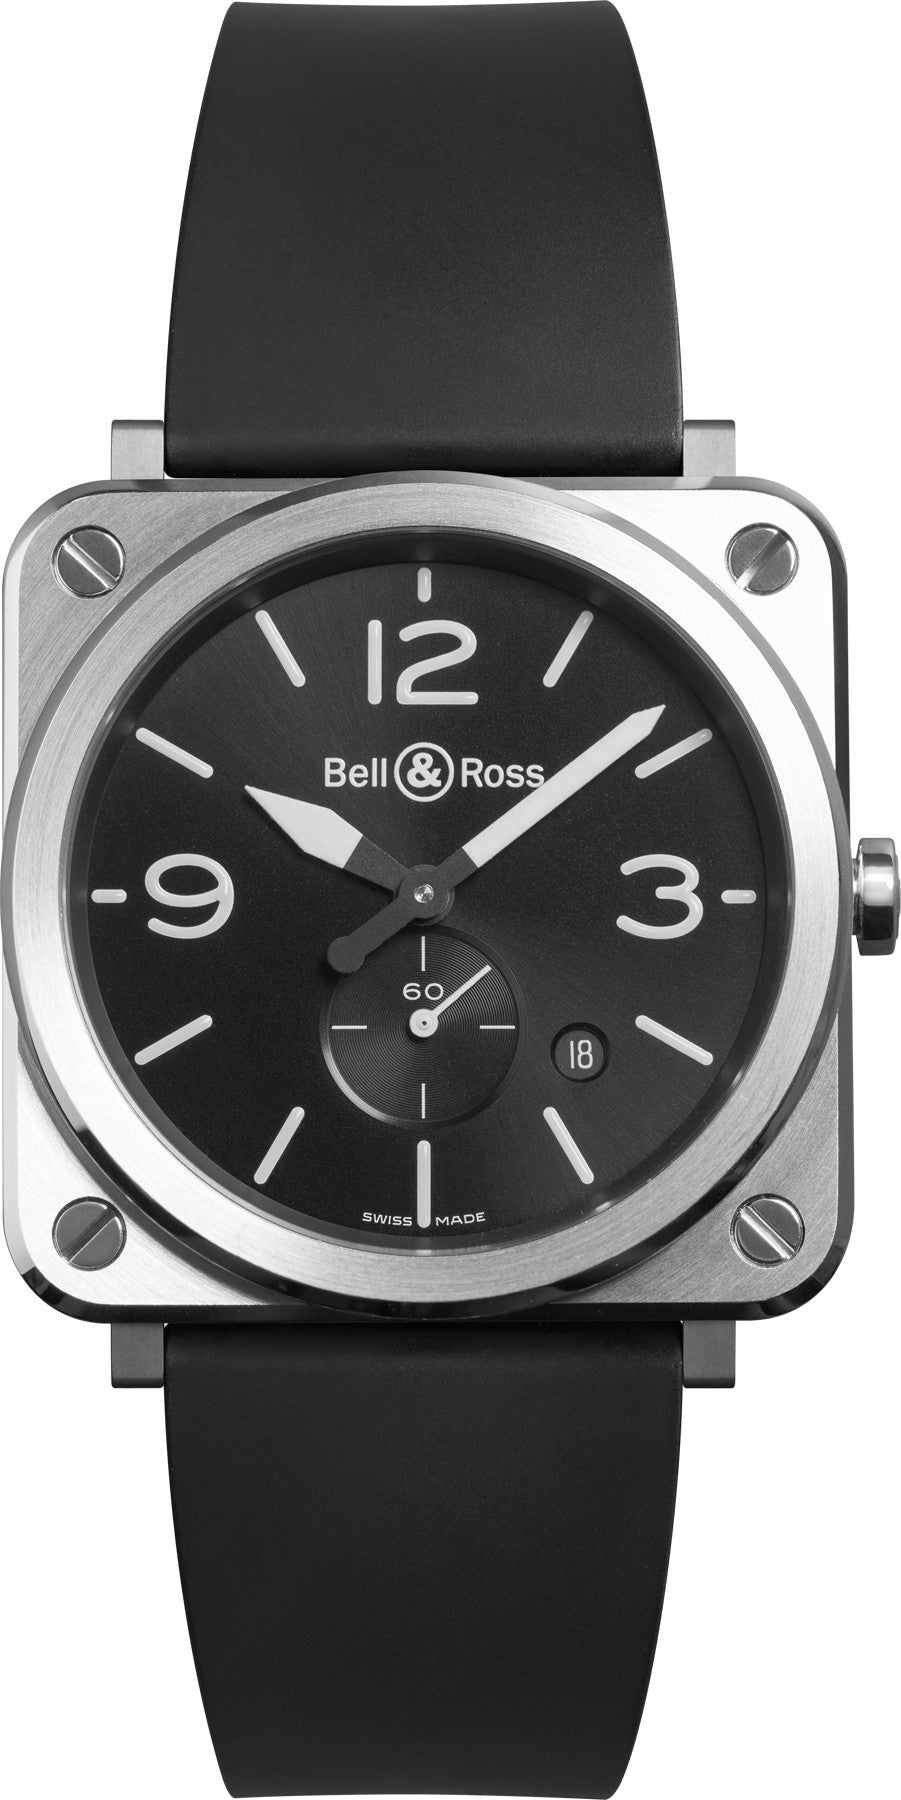 Photos - Wrist Watch Bell & Ross Watch BRS Steel Quartz BR-626 